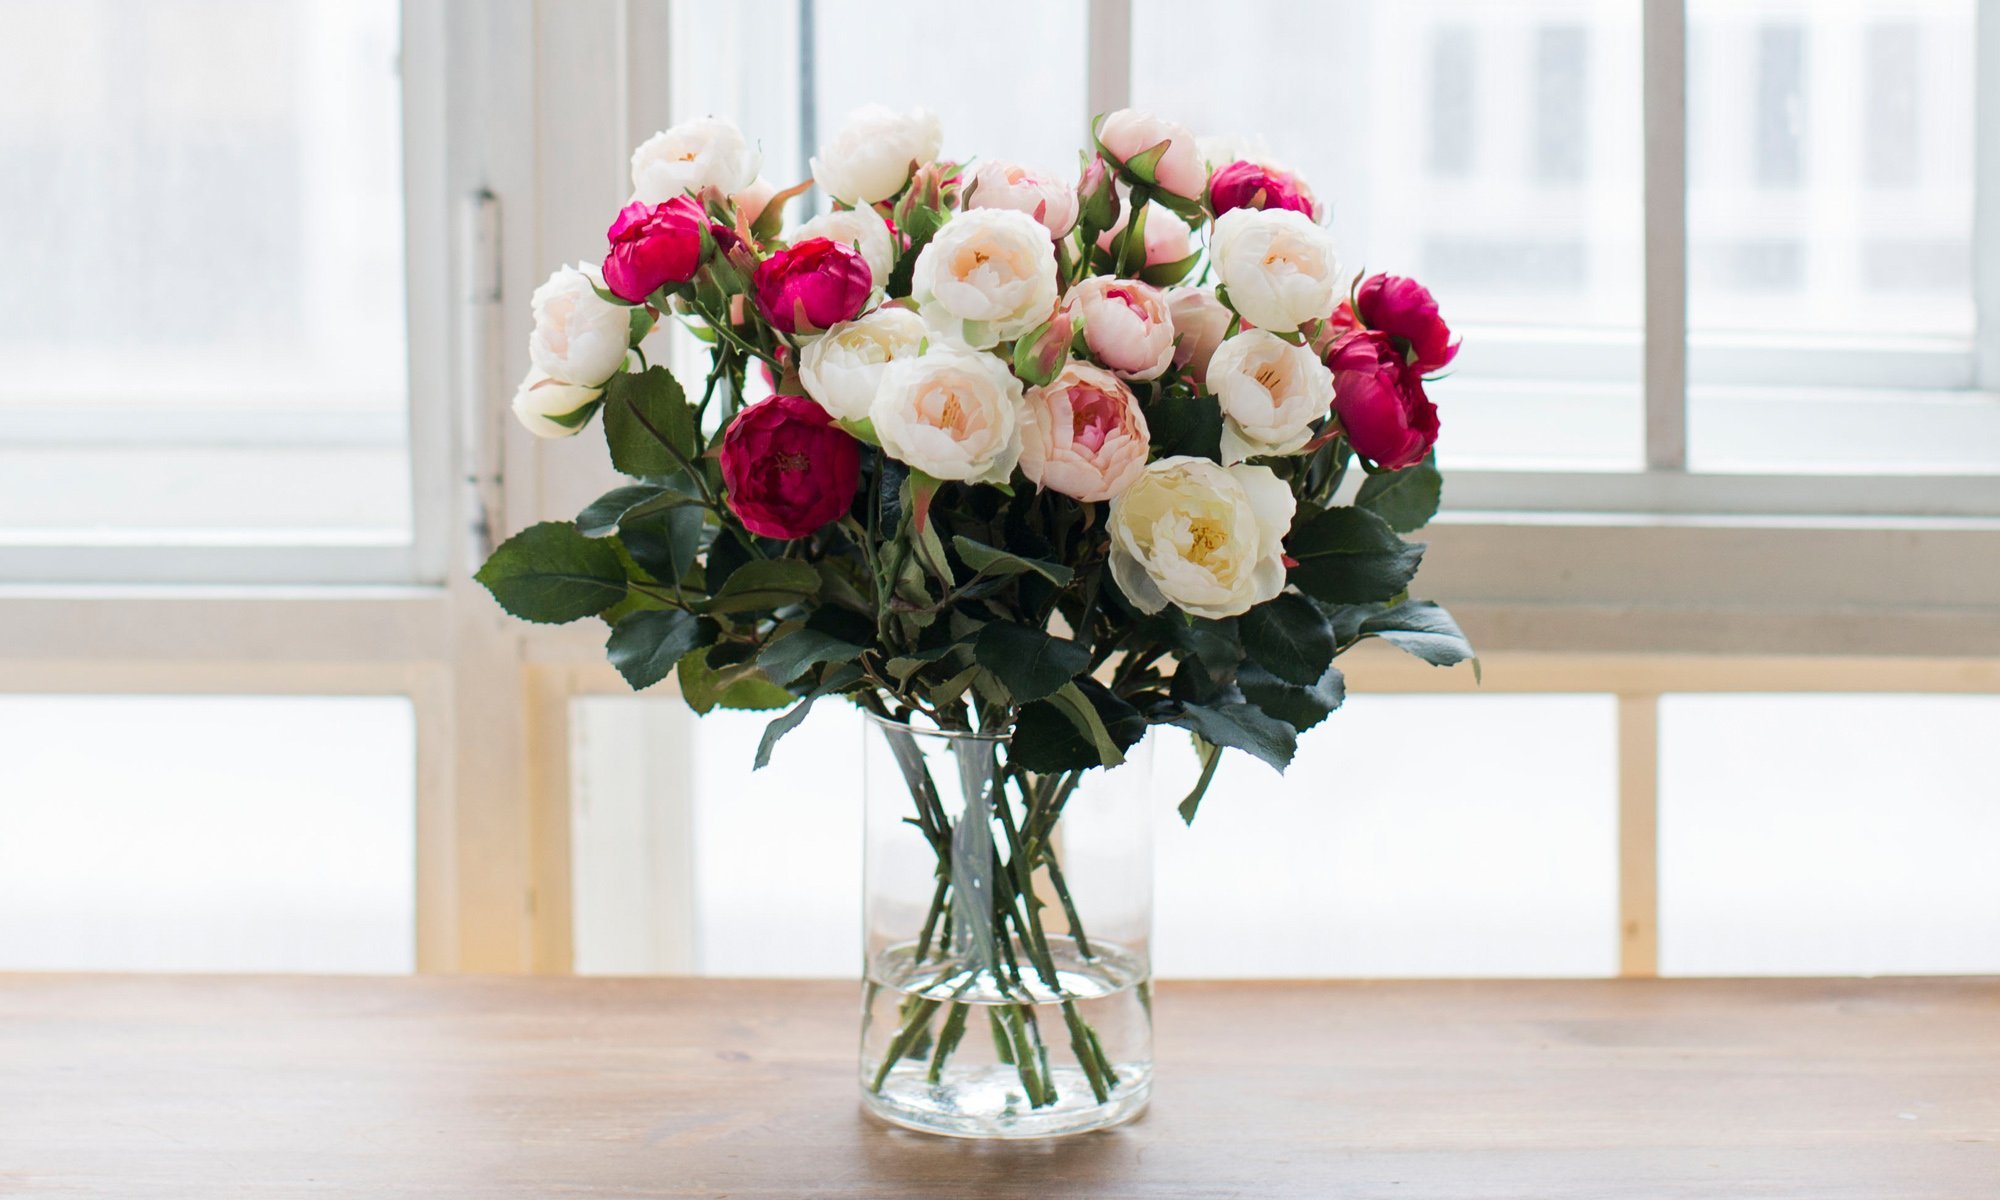 Букеты роз в вазе на столе. Цветы в вазе. Шикарные цветы в вазе. Красивый букет цветов в вазе. Букет роз в вазе.